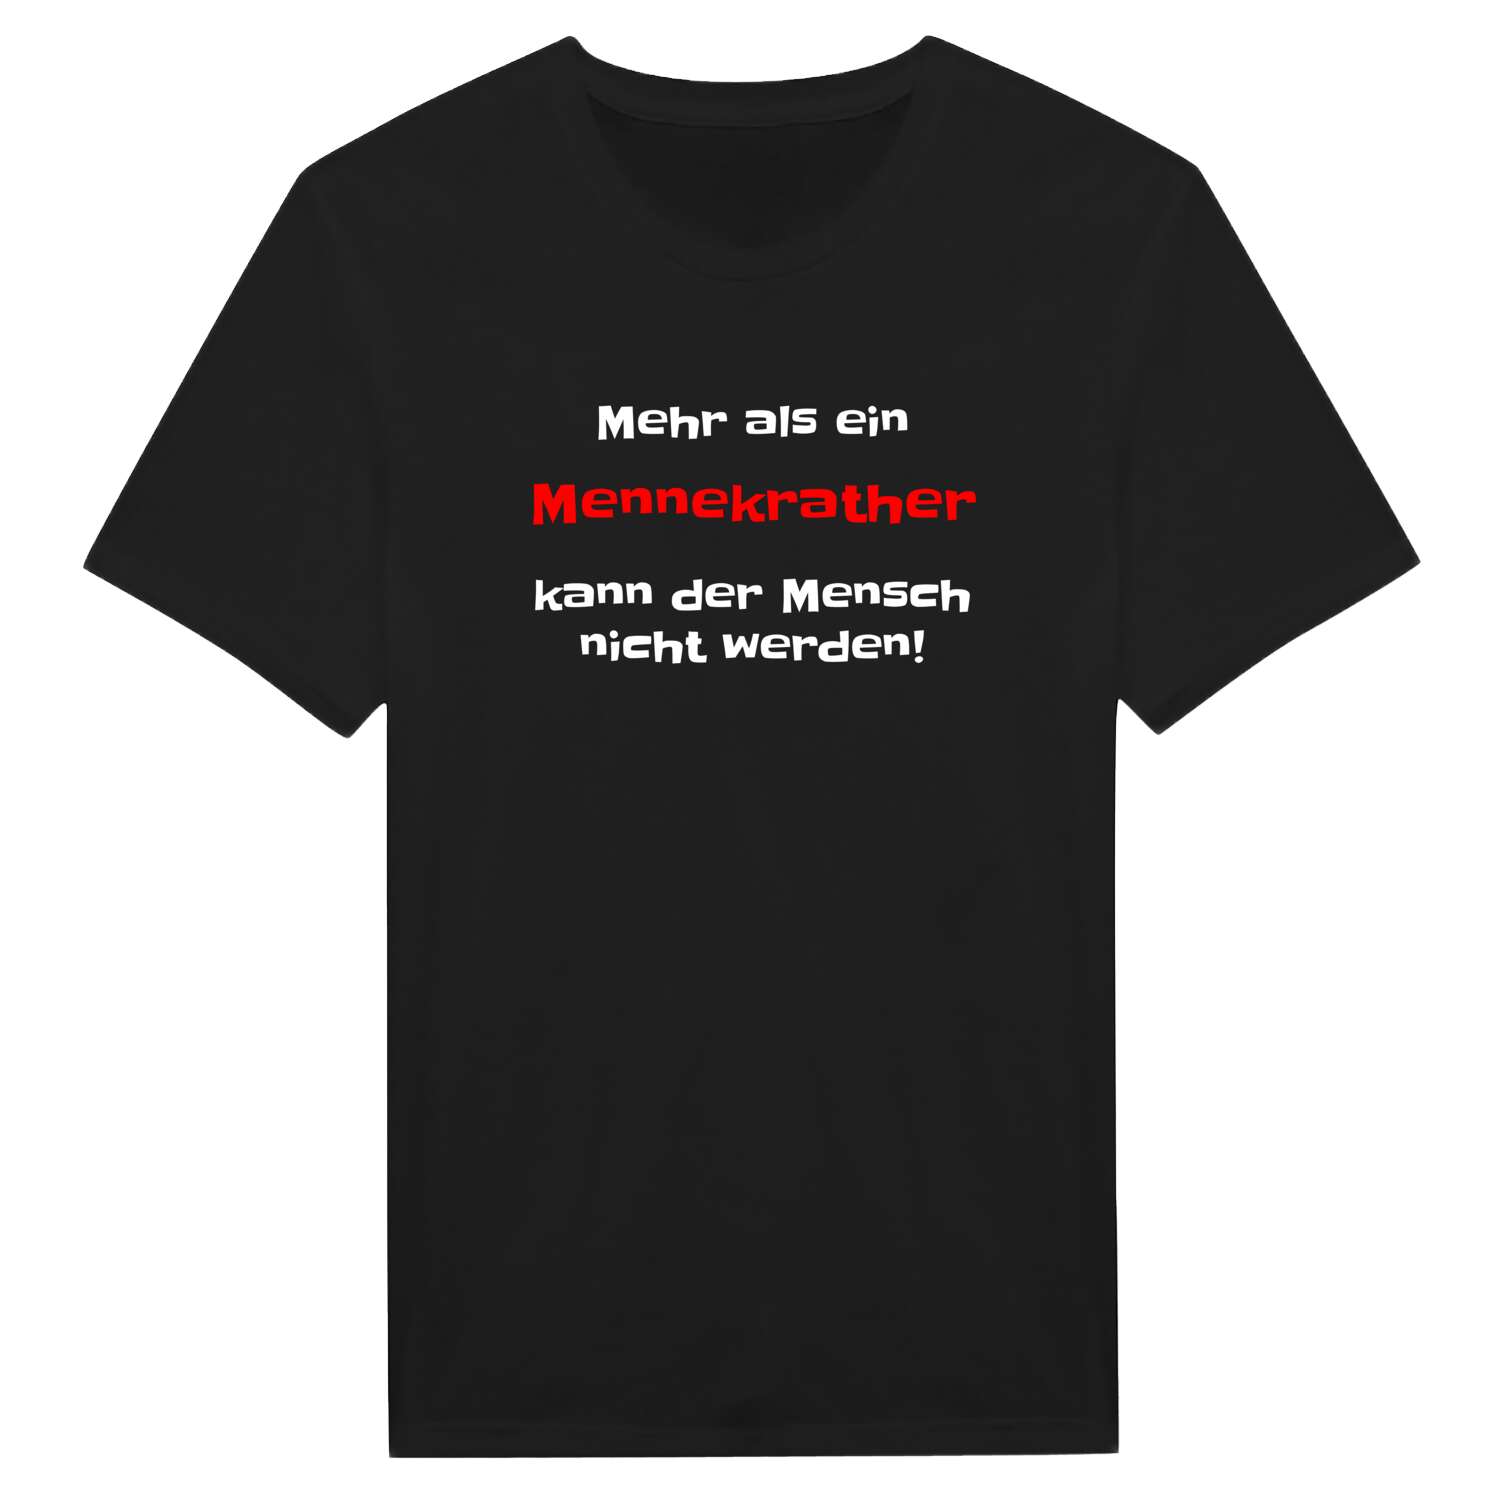 Mennekrath T-Shirt »Mehr als ein«